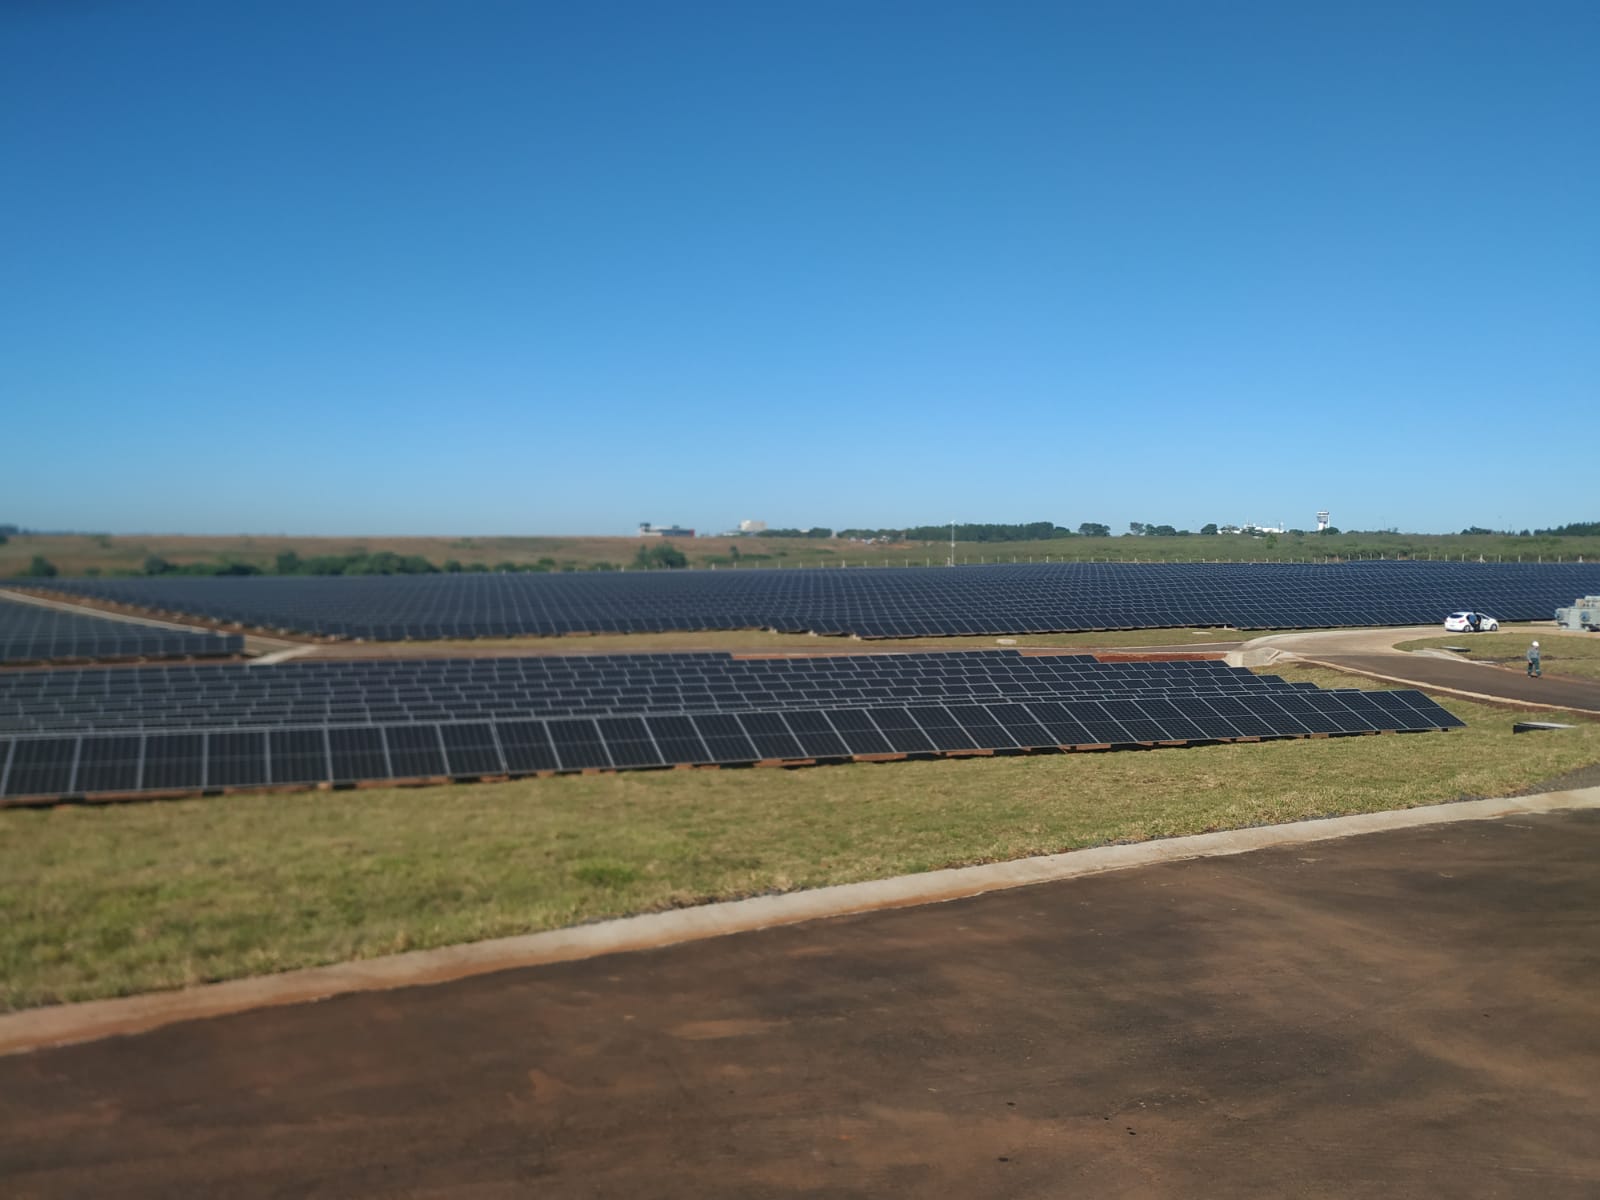 Parque Solar Fotovoltaico: "Muchísimas familias tendrán energía limpia", dijo Passalacqua y reiteró el reclamo por el Gasoducto imagen-2